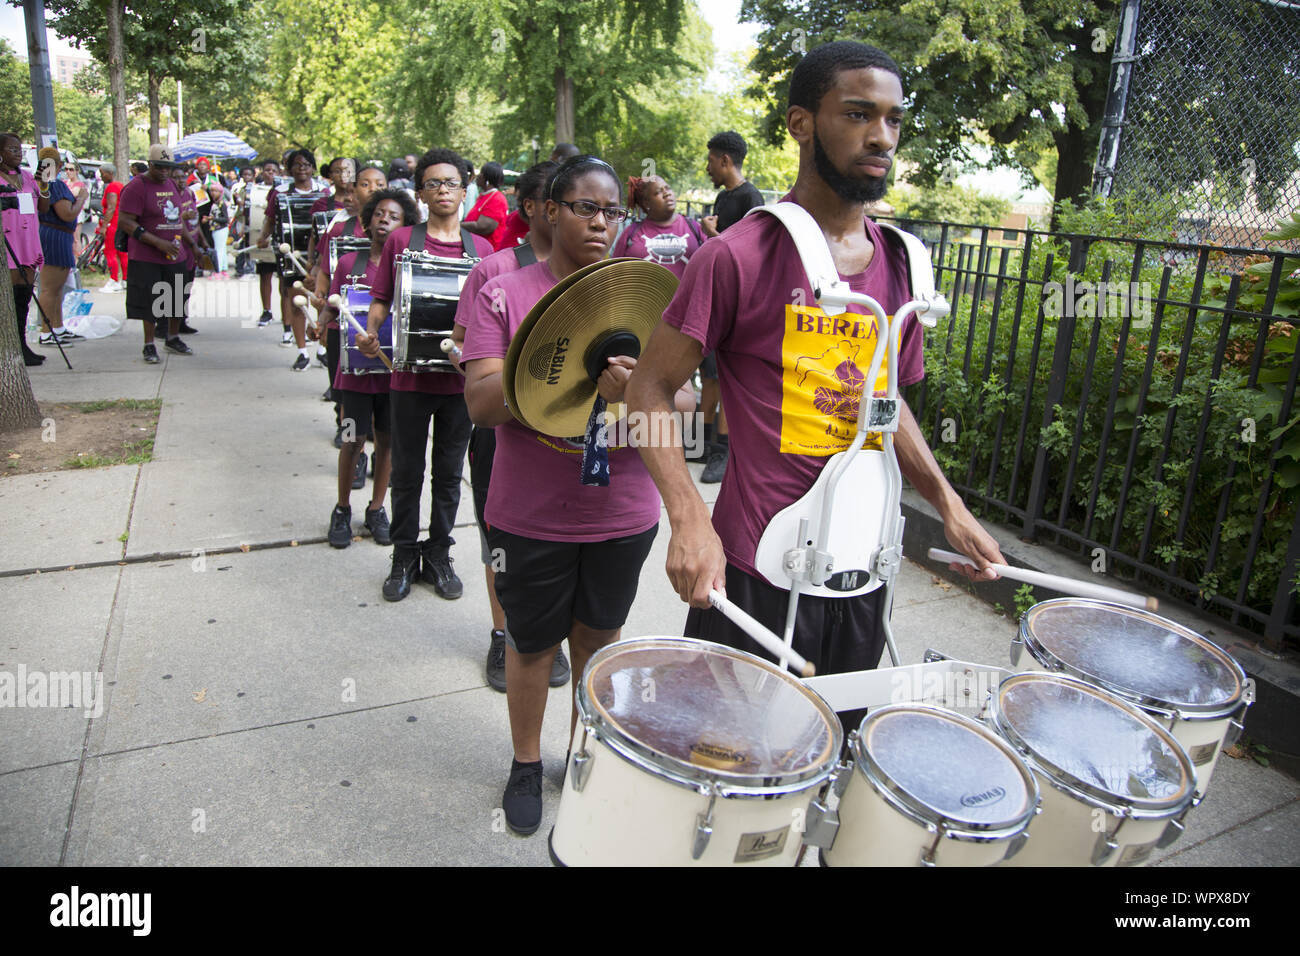 La parade annuelle Hip Hop universelle pour la justice sociale organisée en l'honneur de Marcus Garvey dans le quartier de Bedford Stuyvesant à Brooklyn, New York. Banque D'Images